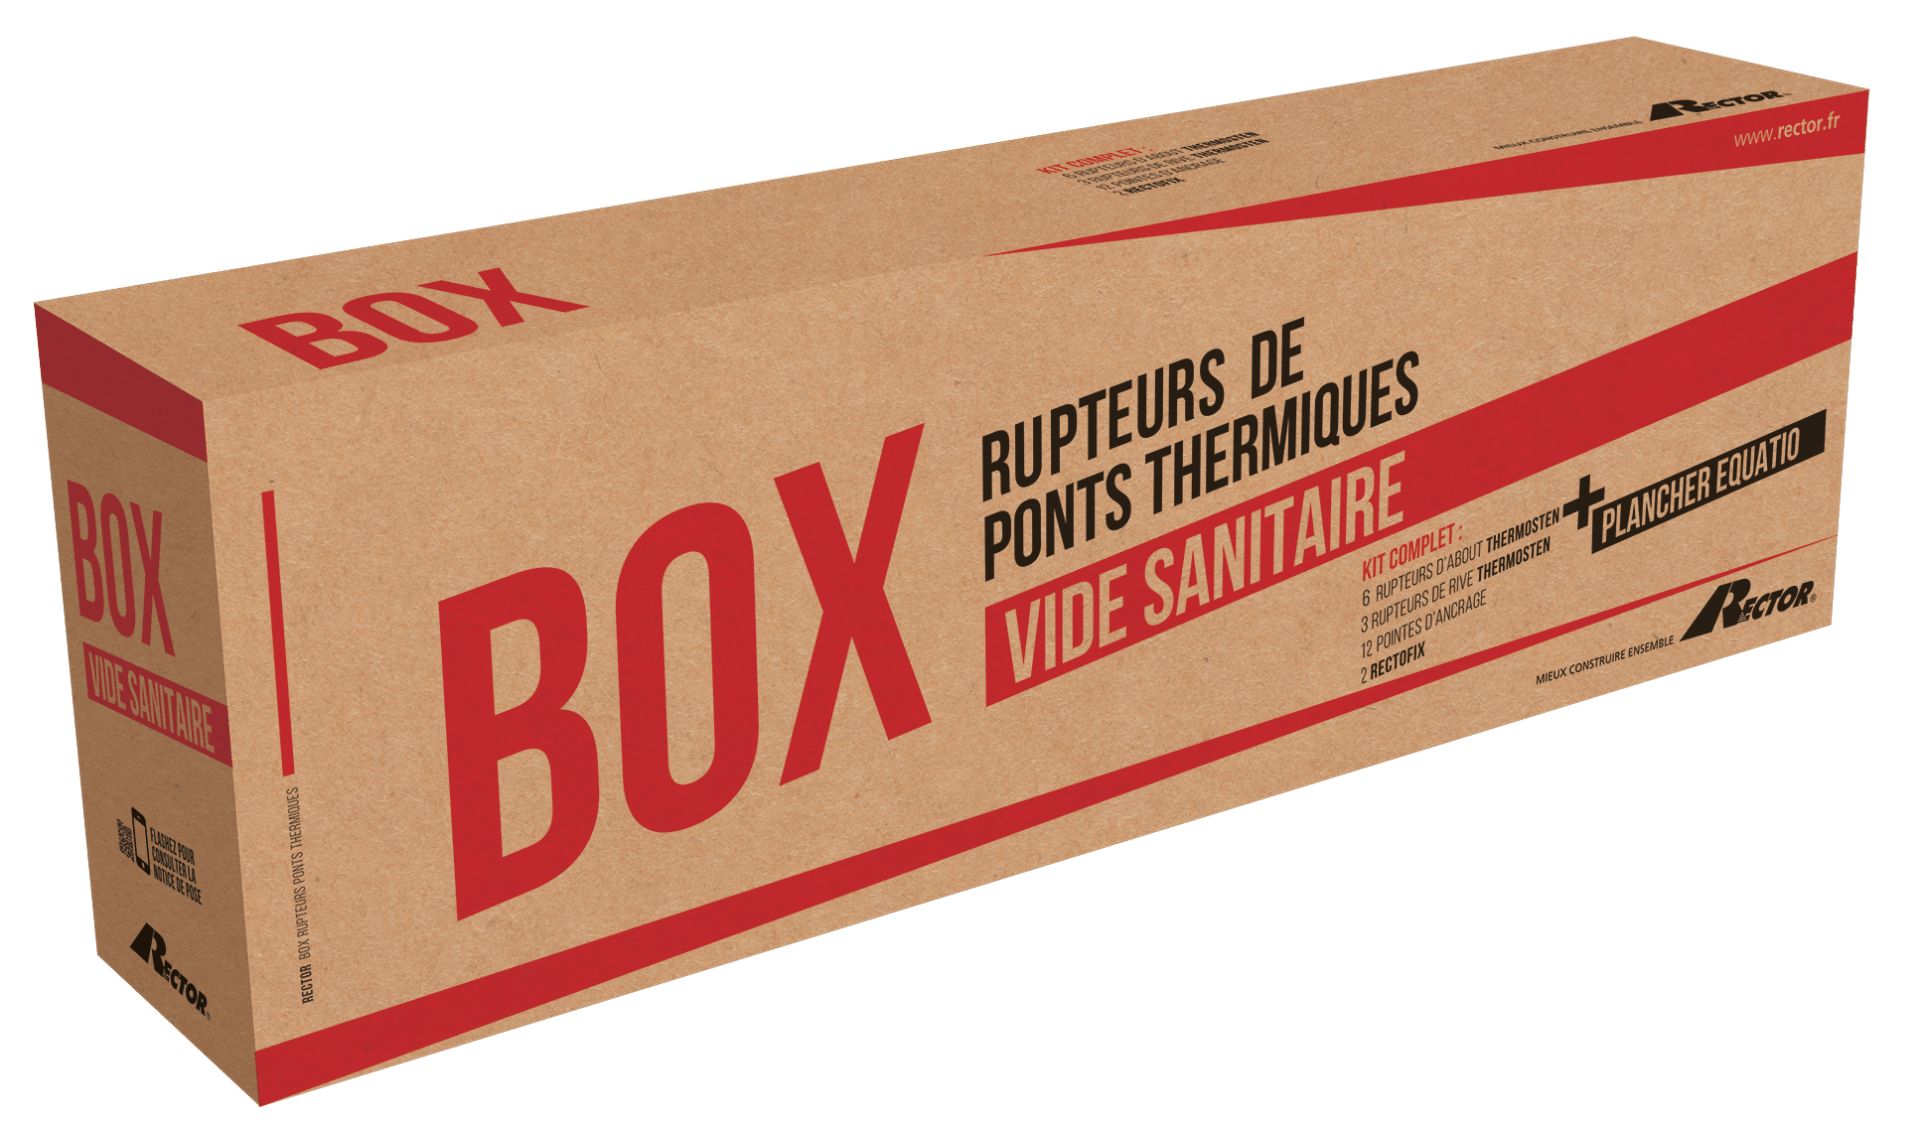 Box Equatio, utilisé pour supprimer les ponts thermiques en vide sanitaire_0